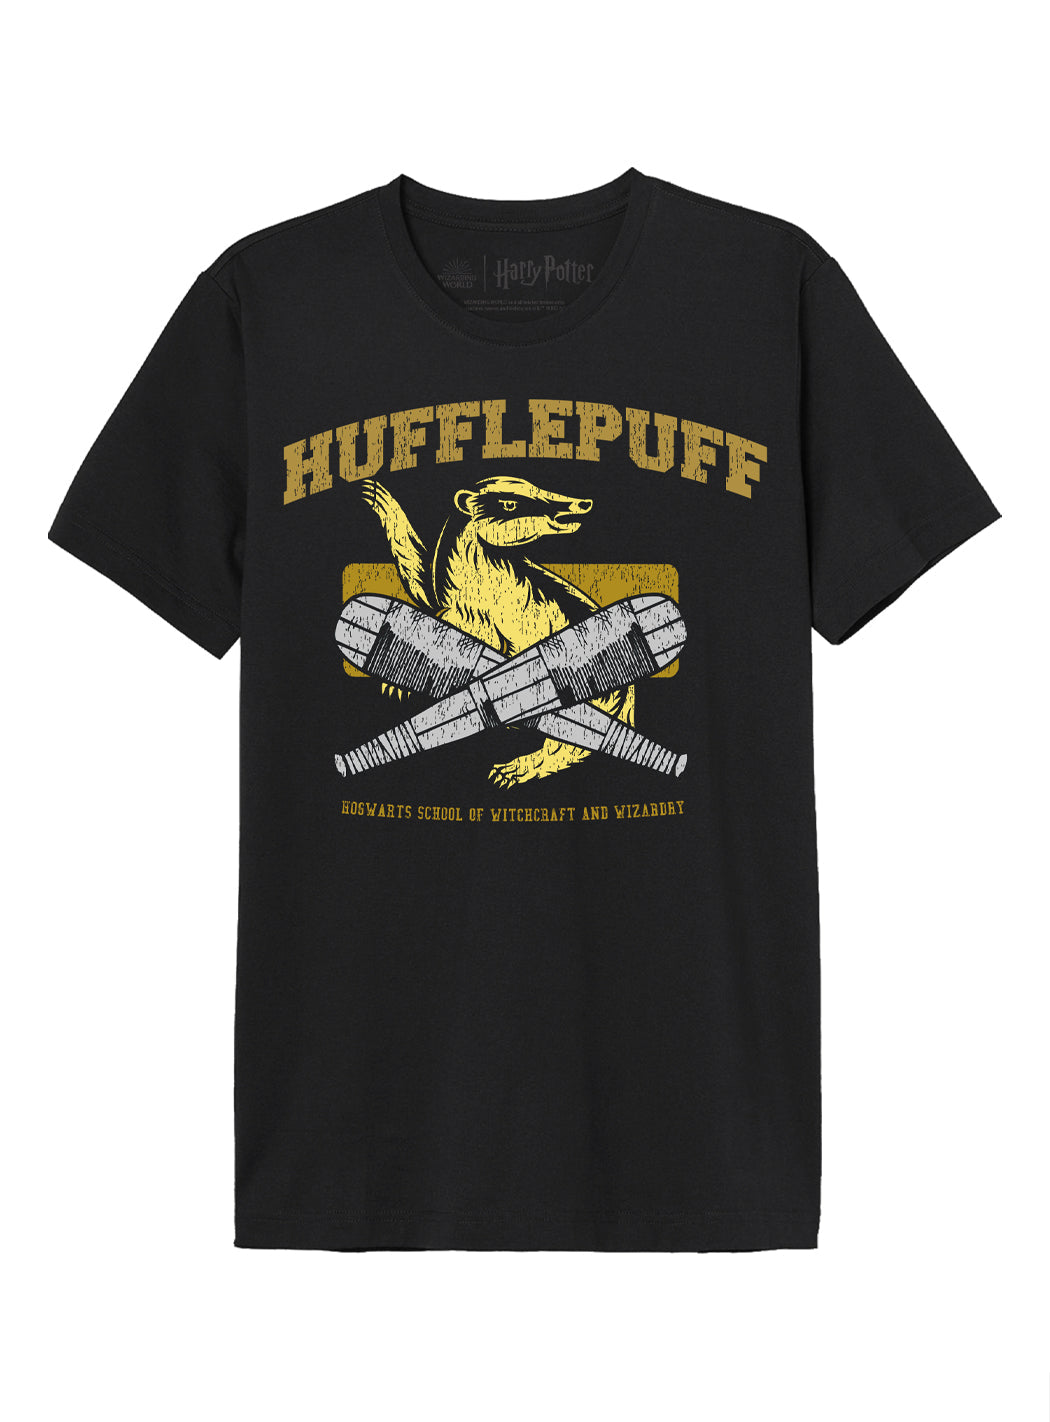 T-shirt Harry Potter - HUFFLEPUFF QUIDDITCH